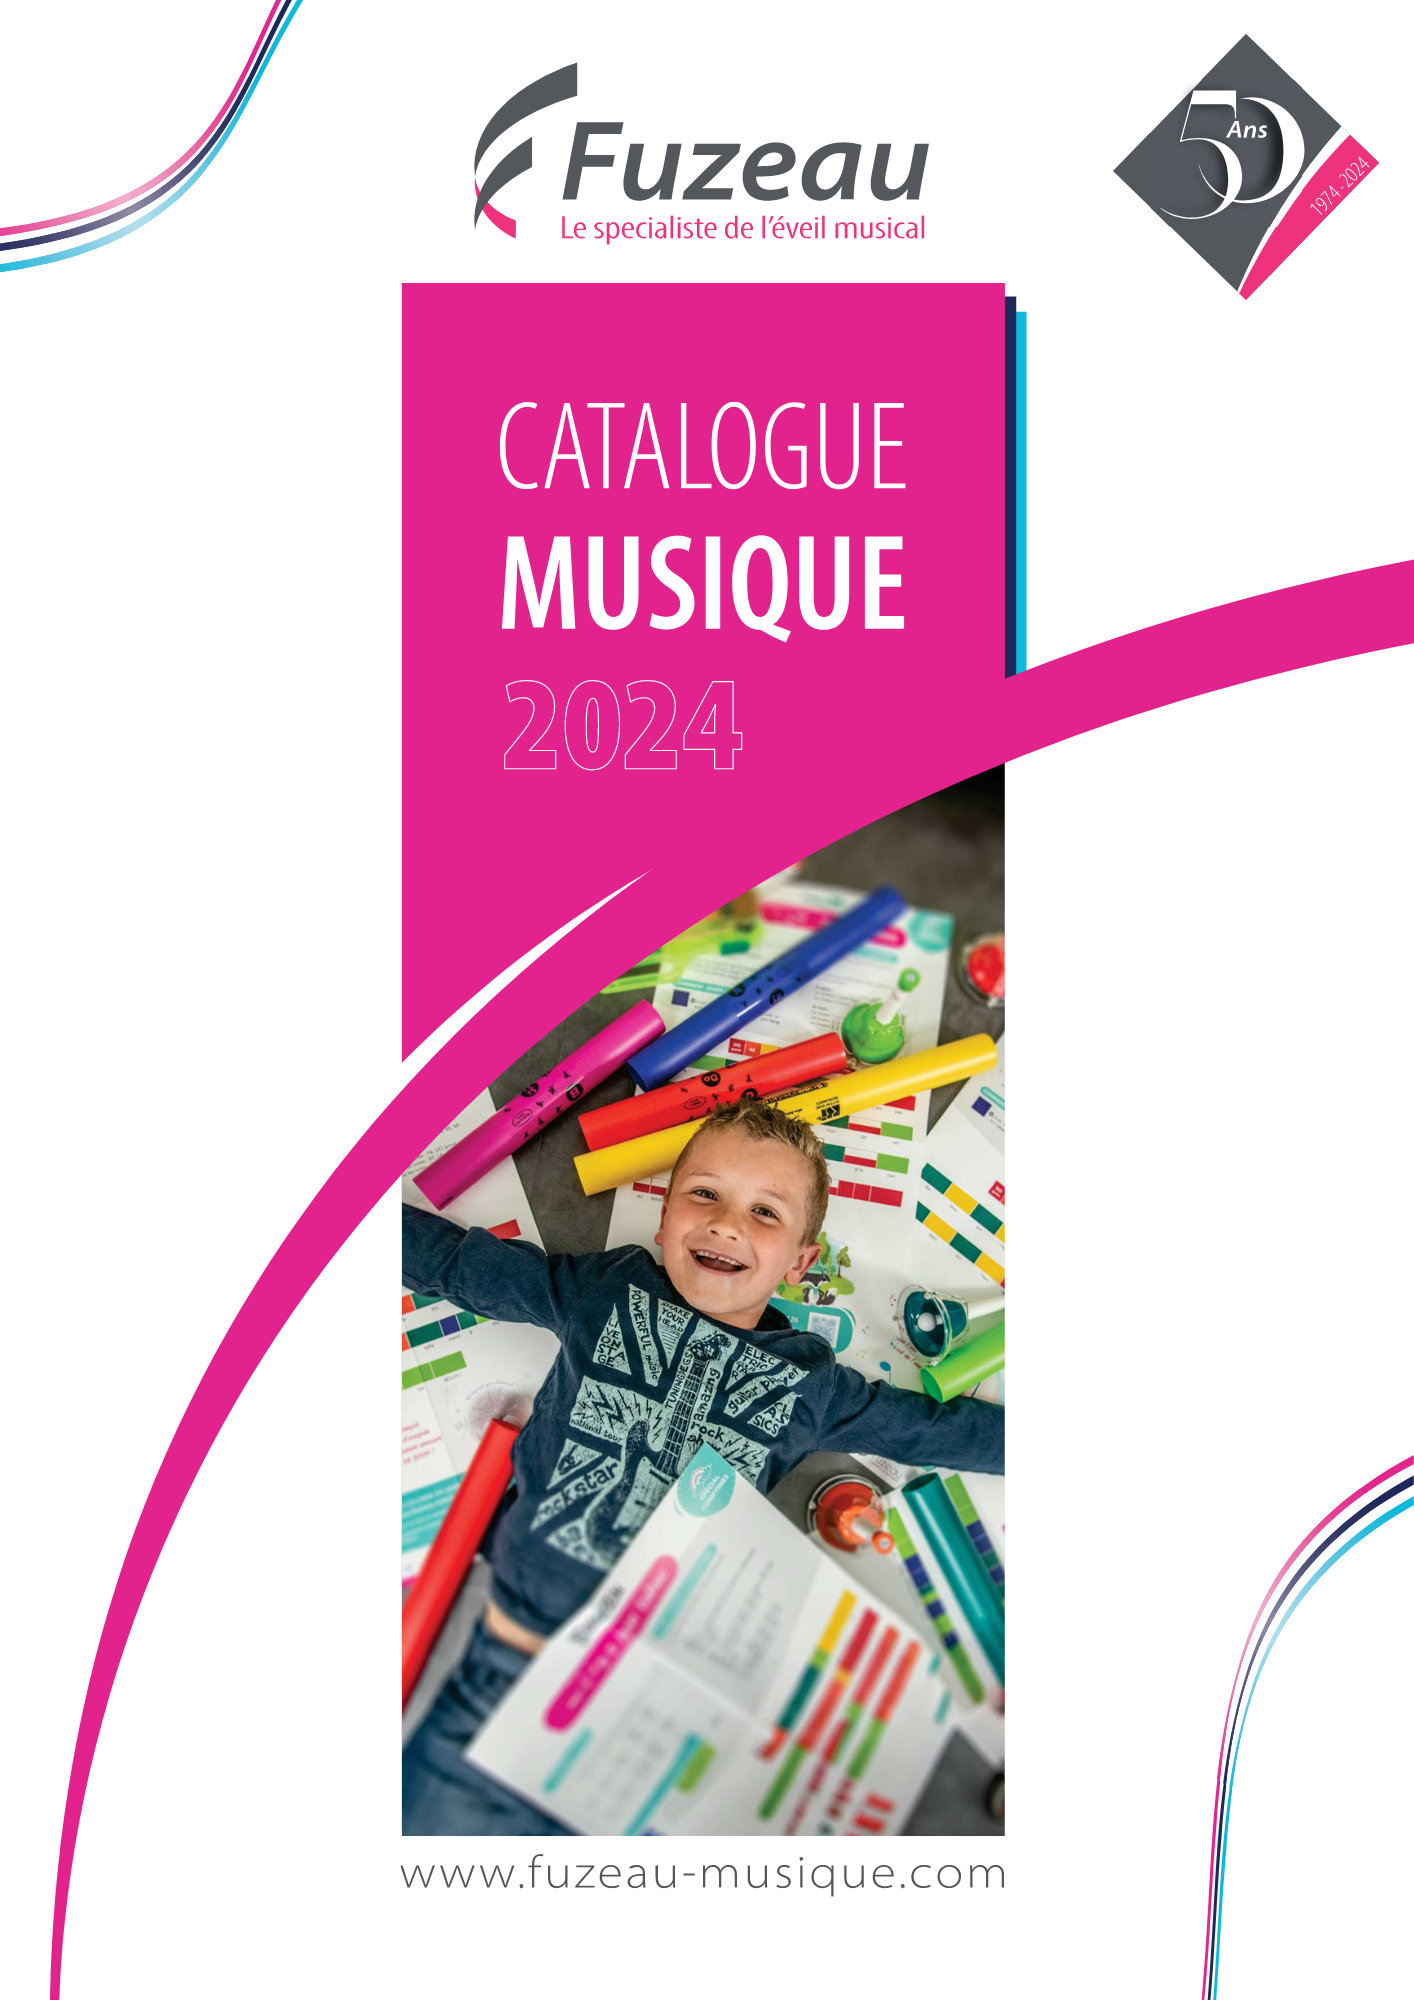 Couverture_catalogue_Fuzeau_Musique_2024